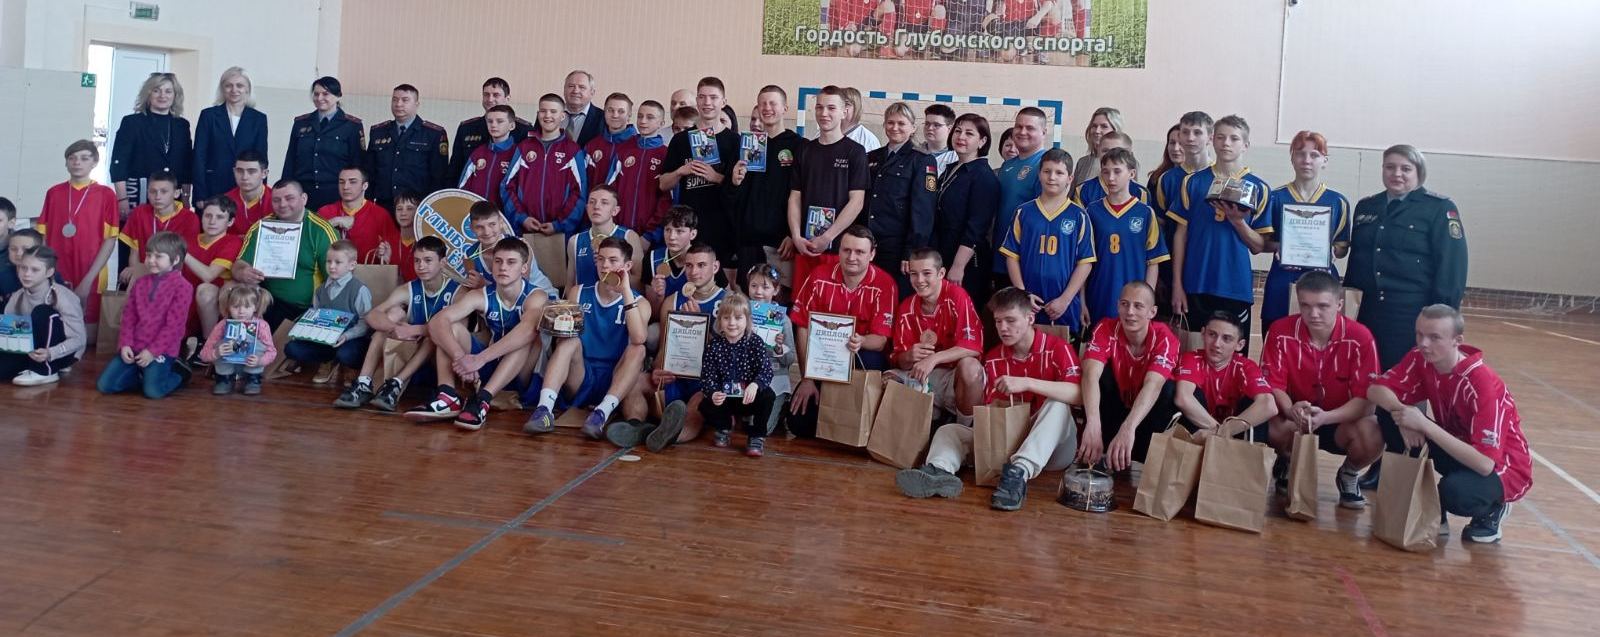 27 марта команда обучающихся колледжа заняла третье место в областной спортландии «Нас объединяет спорт!»